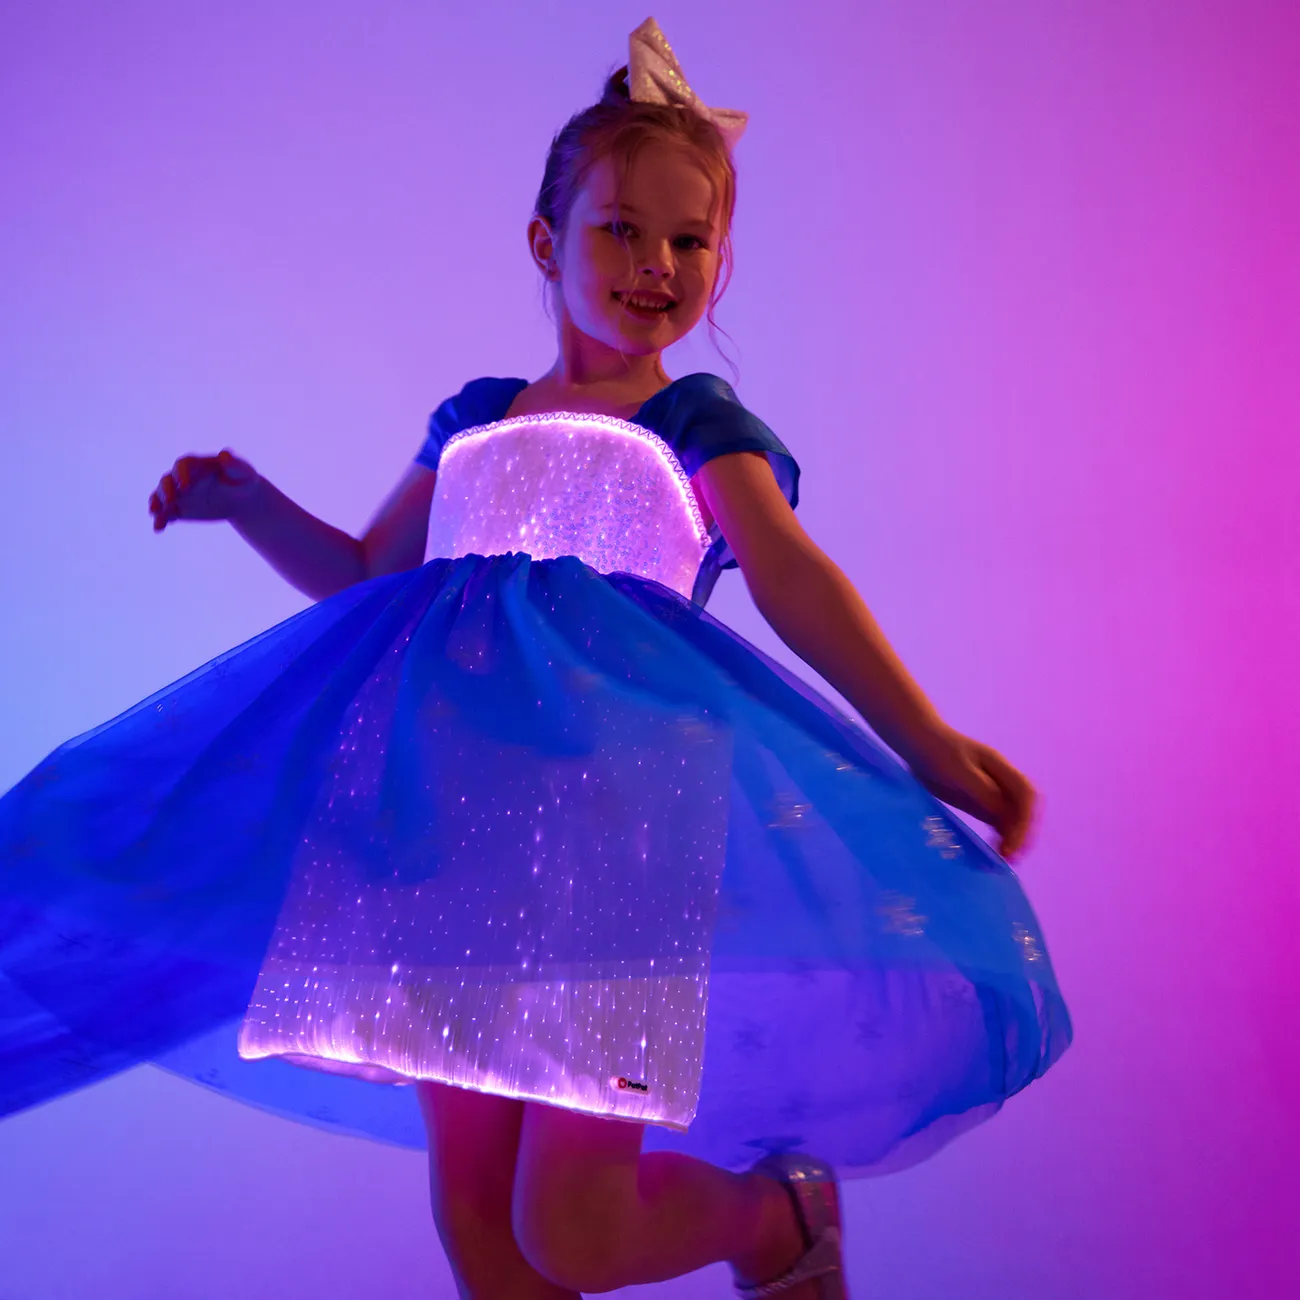 Go-Glow Light Up Blue Party Dress avec paillettes de flocon de neige pailleté et cape amovible, y compris le contrôleur (batterie intégrée) Bleu Foncé / Blanc big image 1